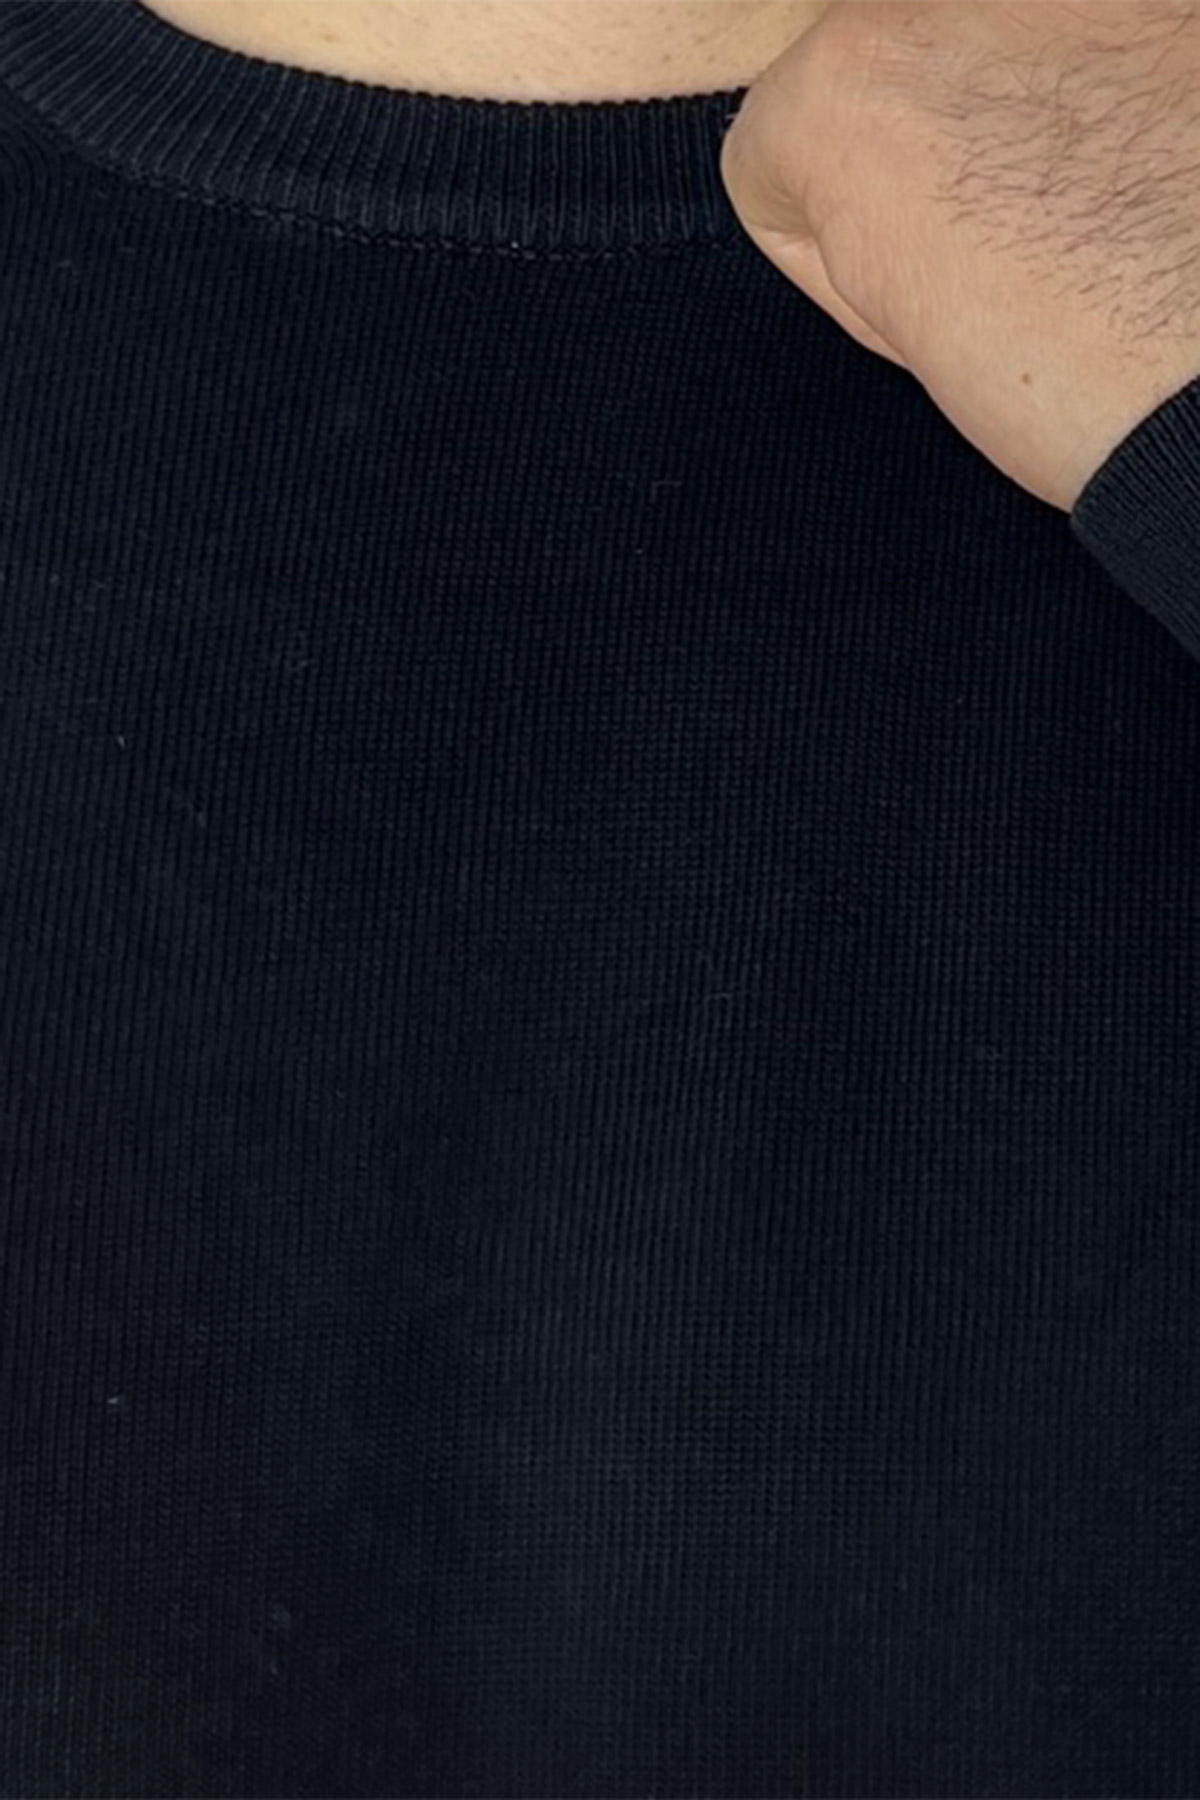 Maglioncino da uomo nero maniche lunghe 100% cotone di filo tinta unita